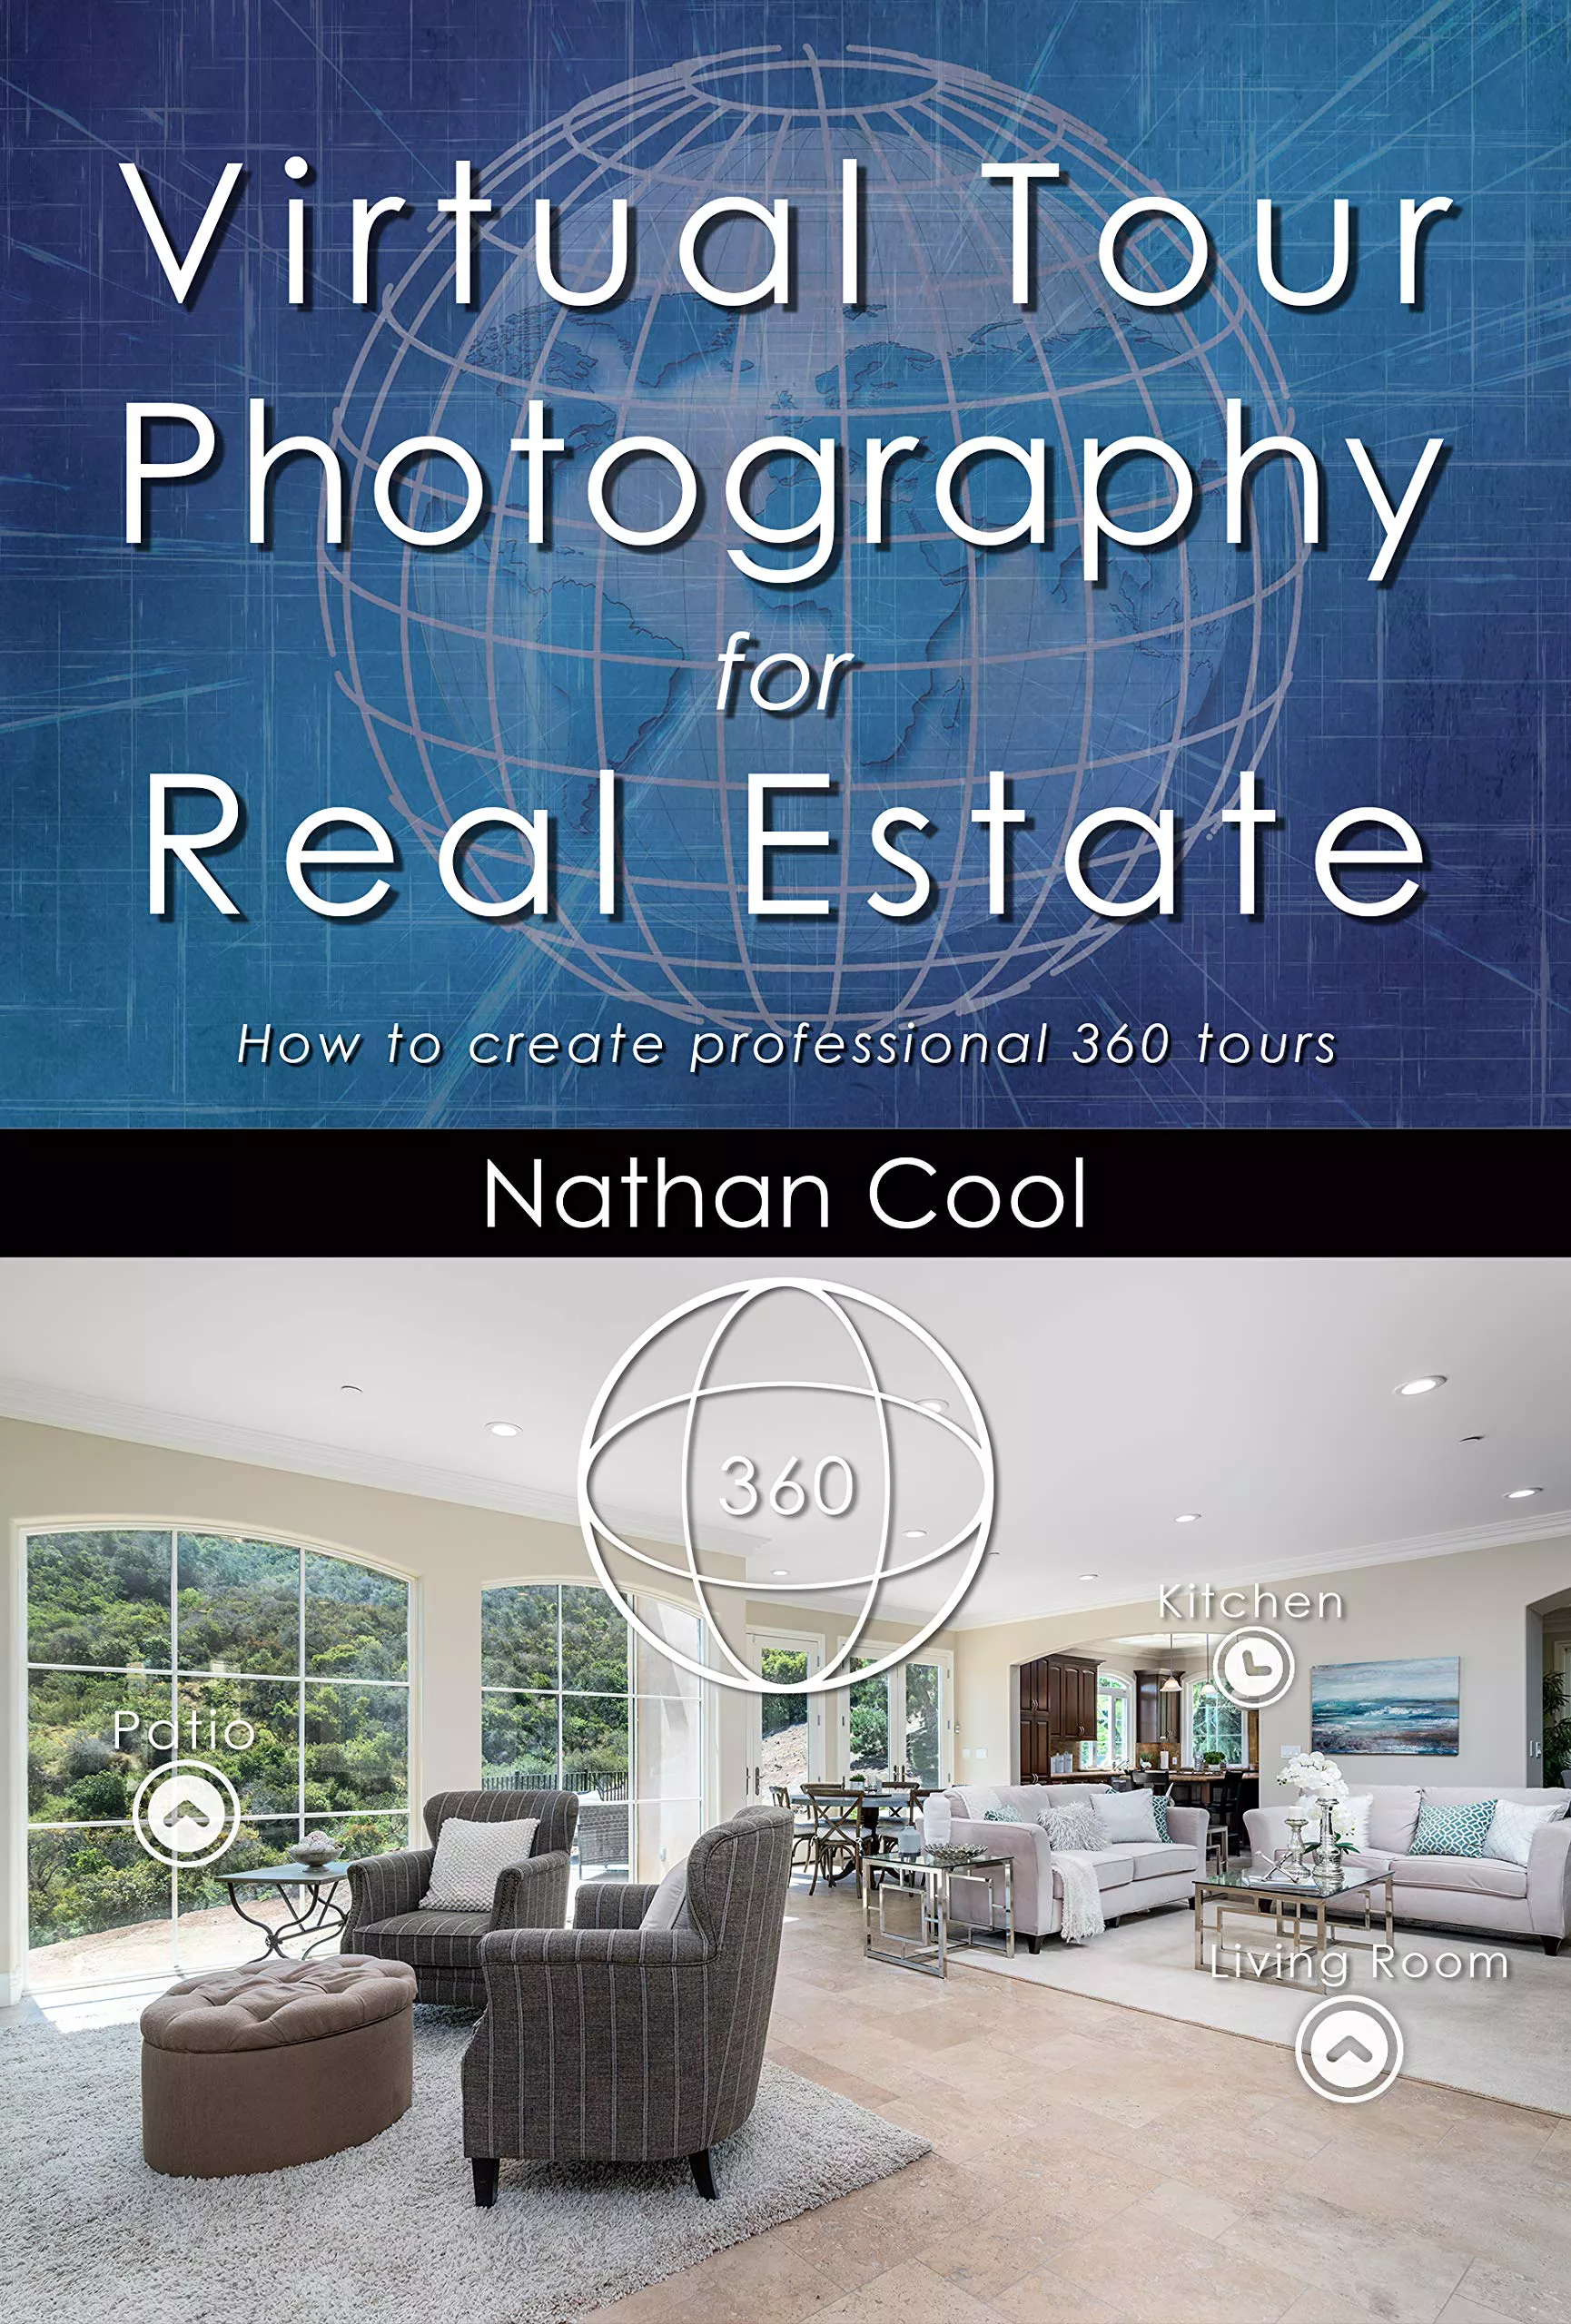 Fotografi Tur Virtual untuk Real Estat oleh Nathan Cool - buku yang wajib dibaca tentang vr